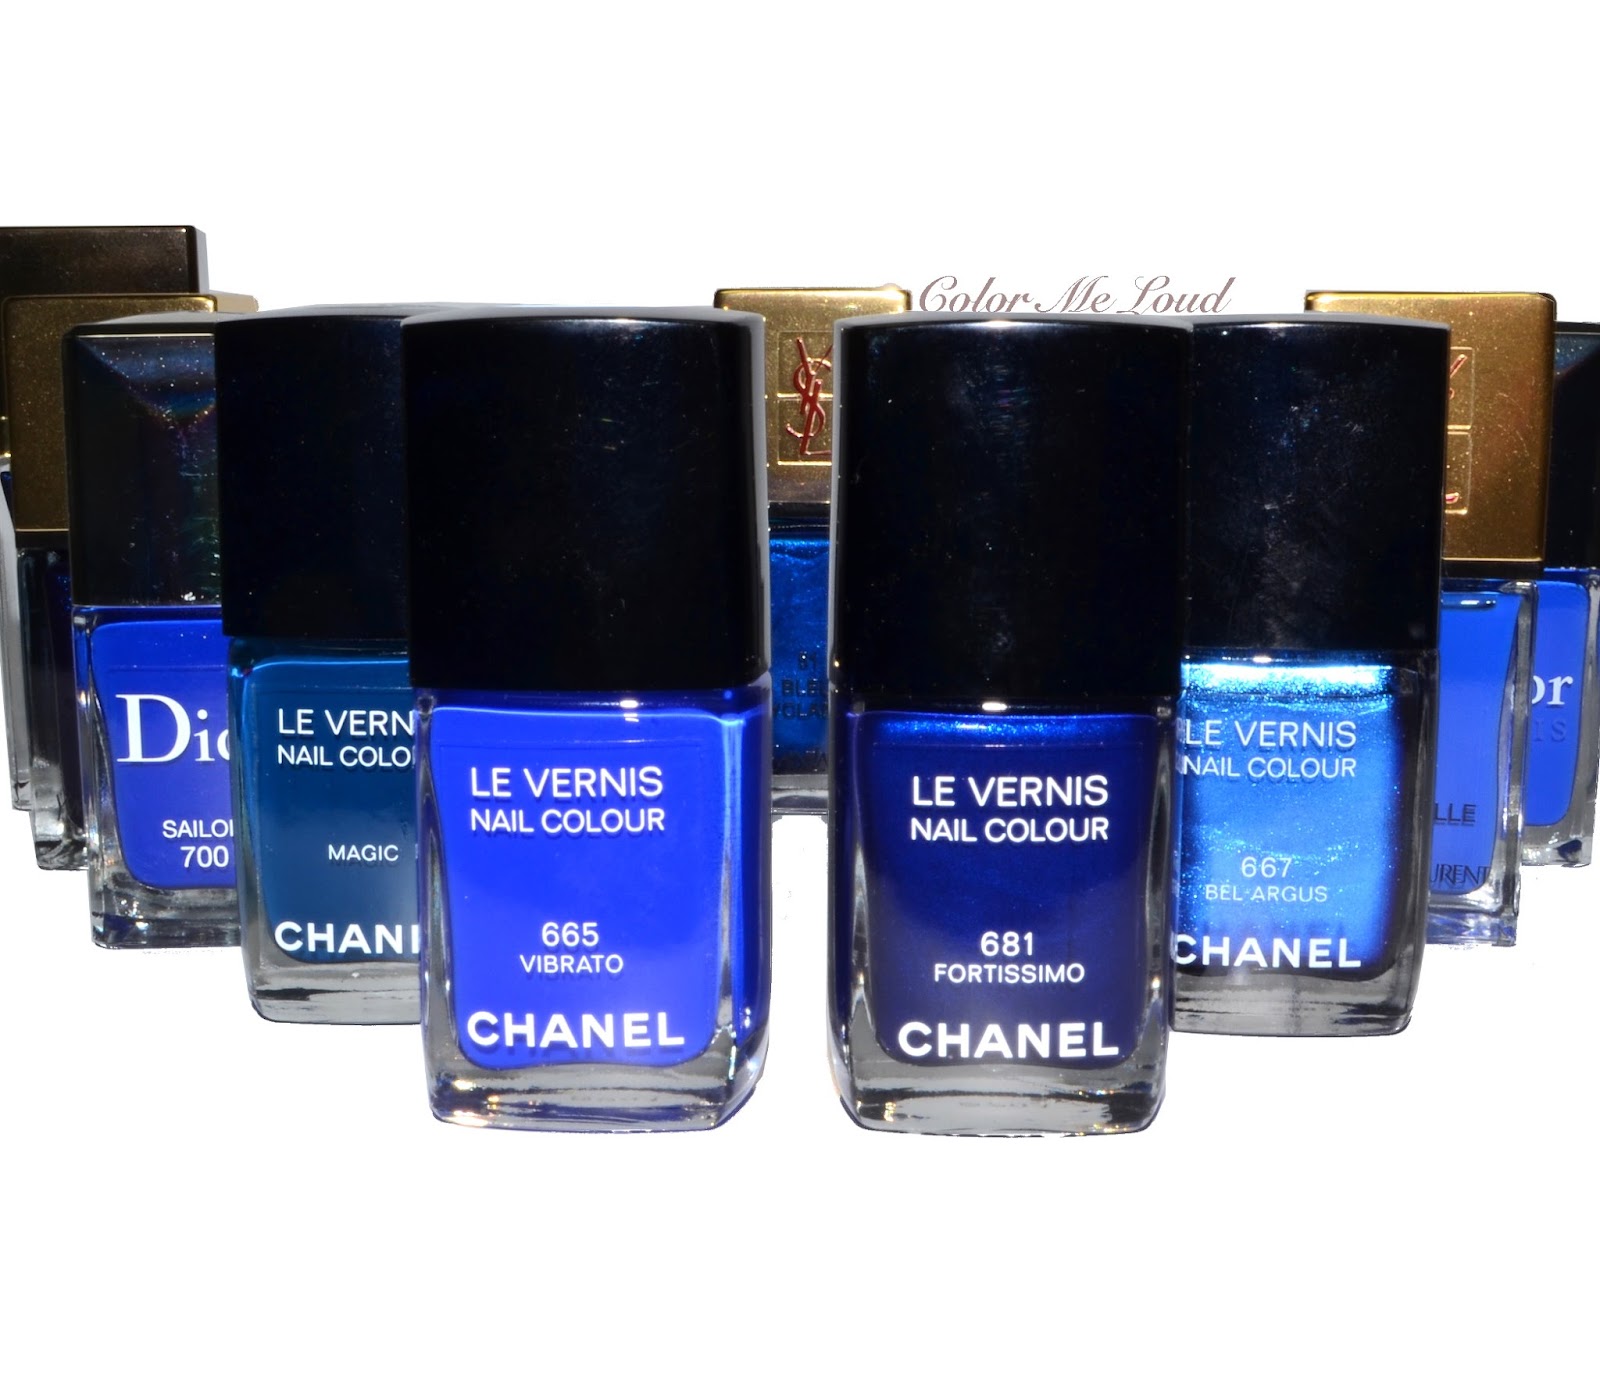 Bleu de Chanel Parfum Review - COMPLIMENTS VERSATILITY